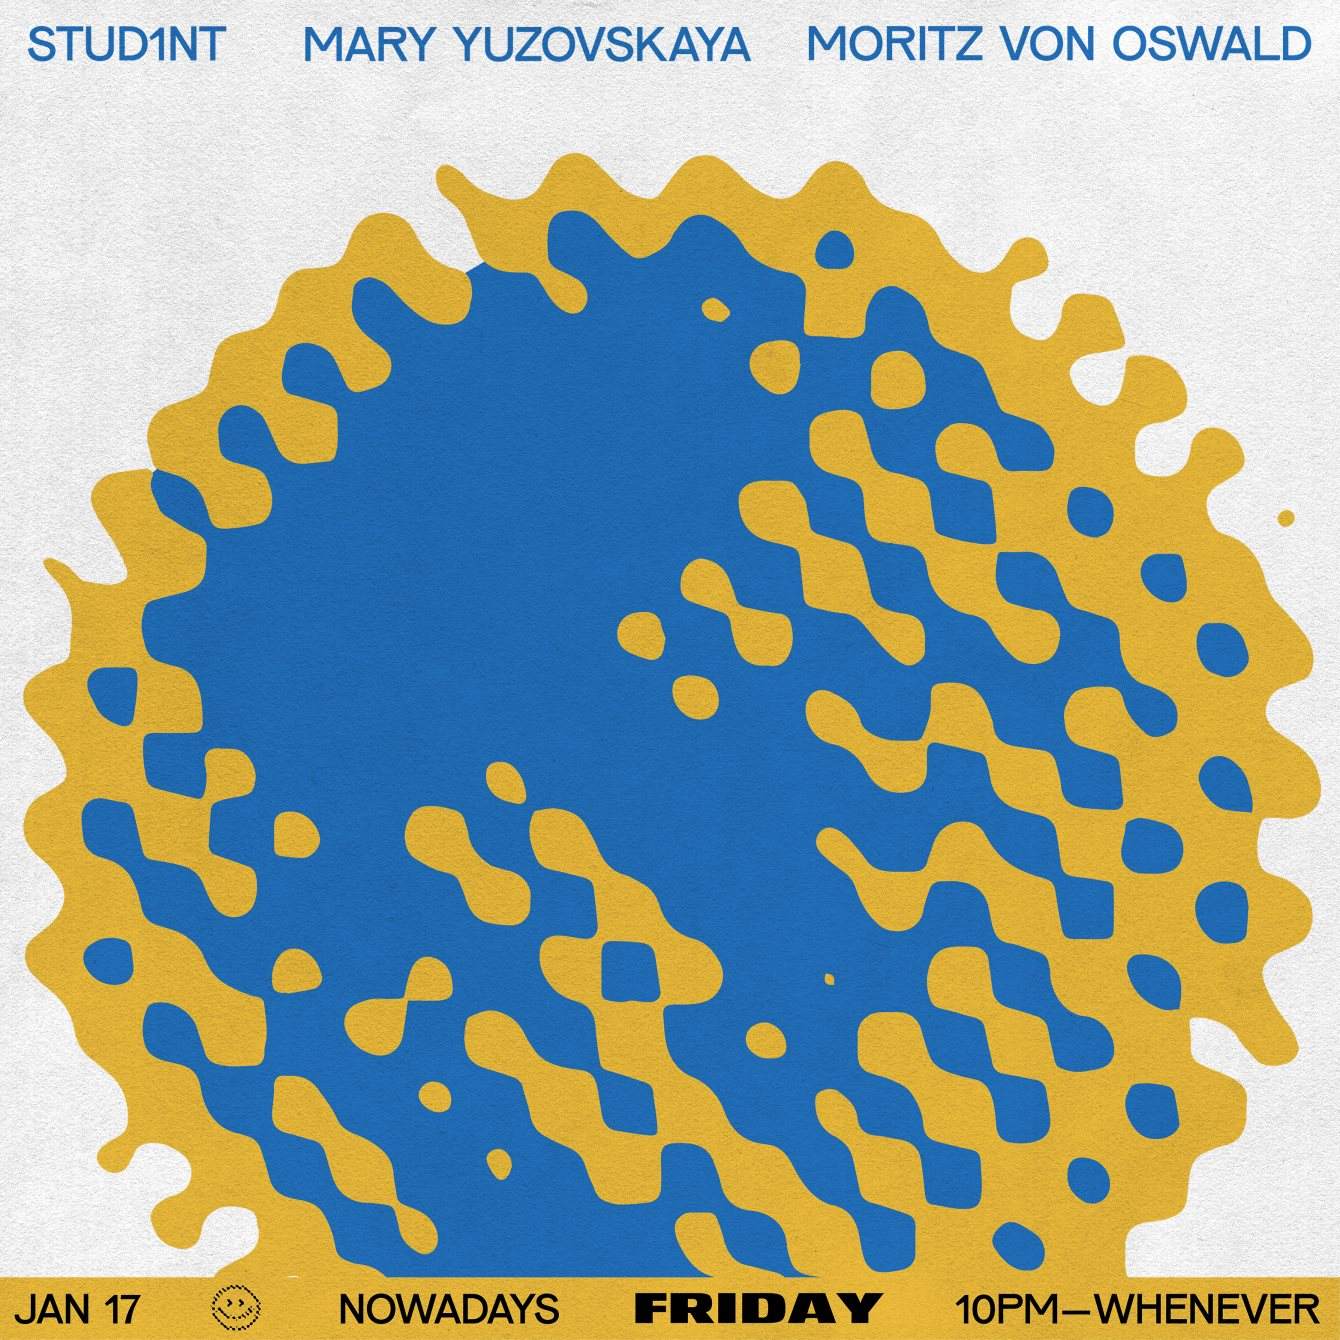 Friday: Stud1nt, Mary Yuzovskaya and Moritz von Oswald - Página trasera